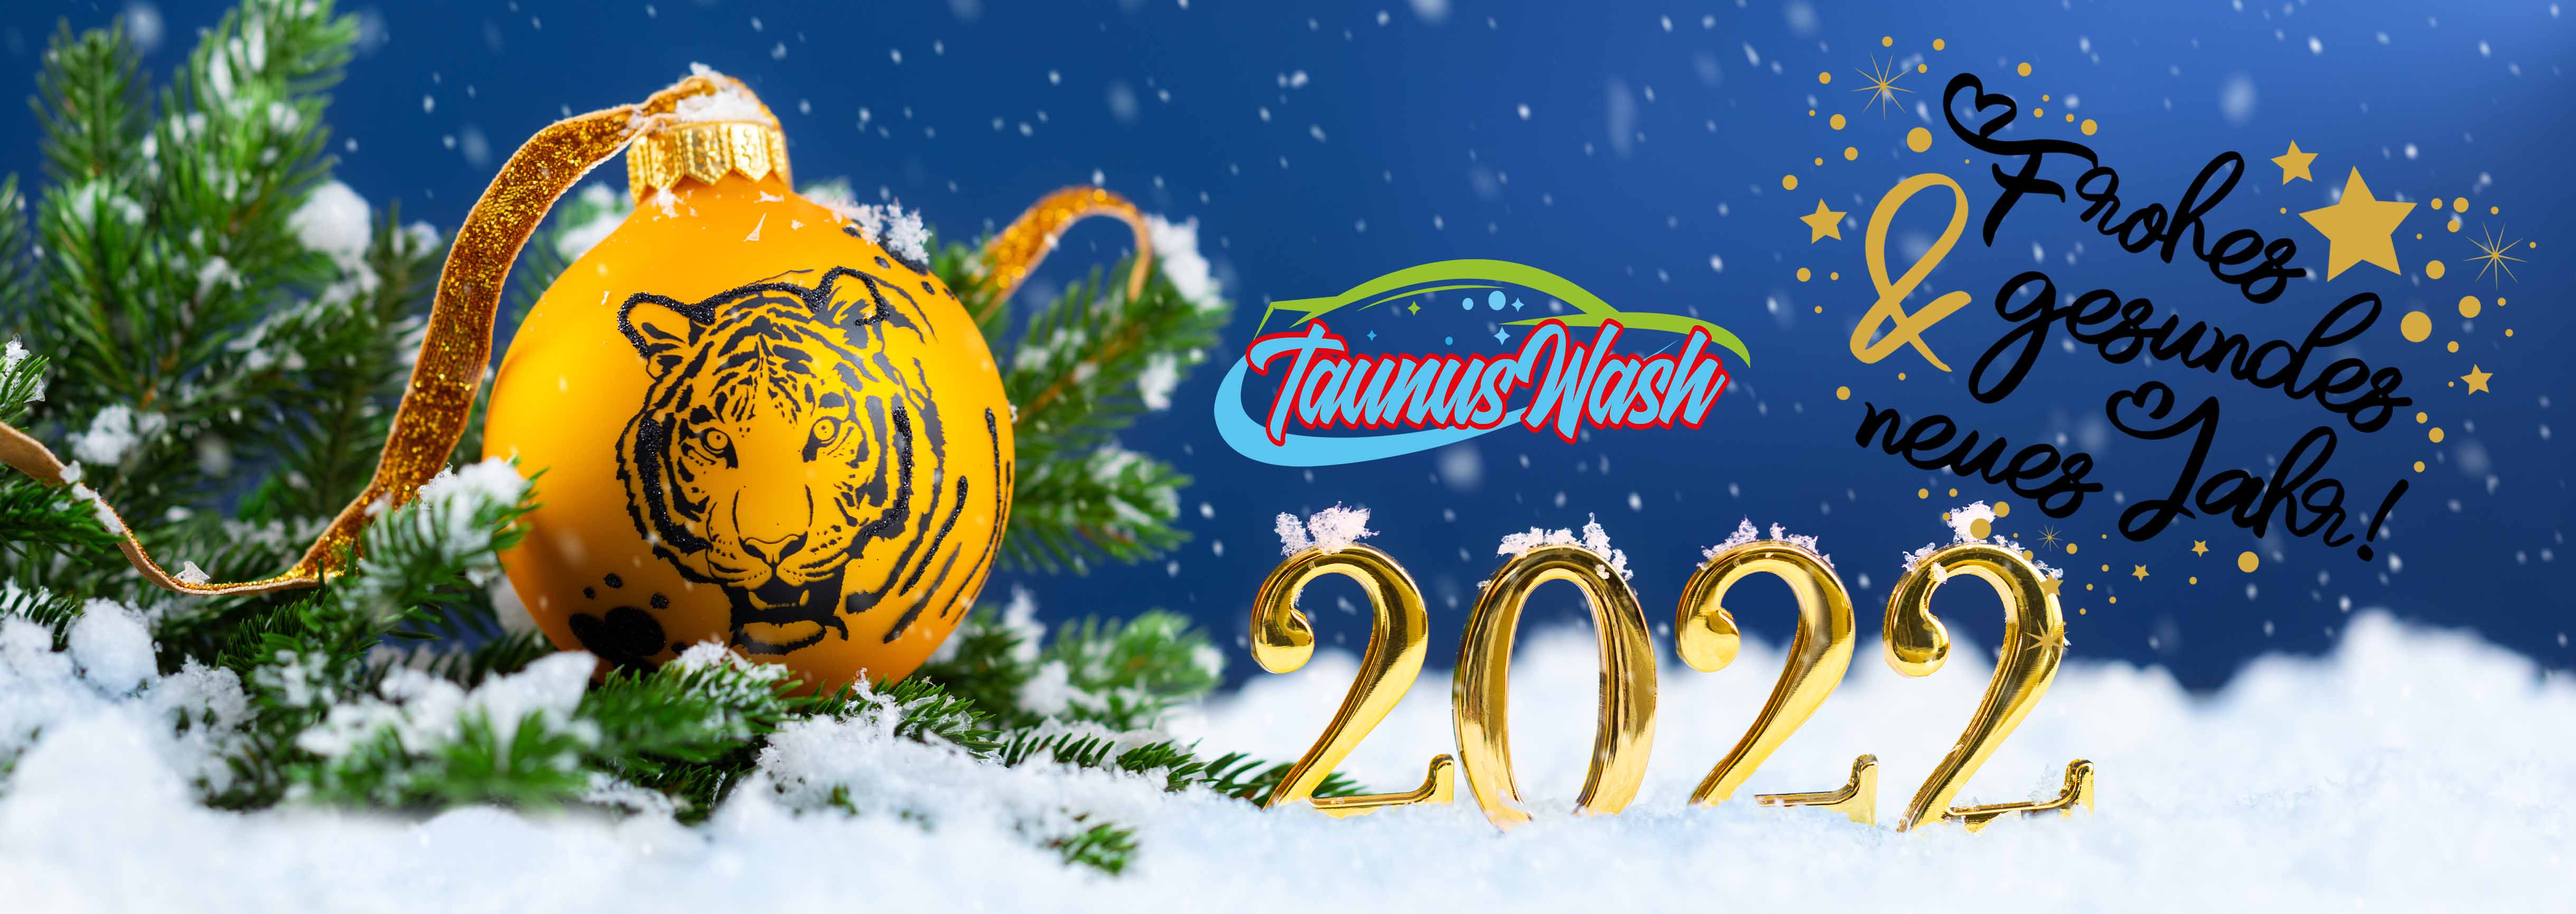 Banner winter Innen Vorlage 12 2021-Tiger frohes Neues Taunuswash.jpg